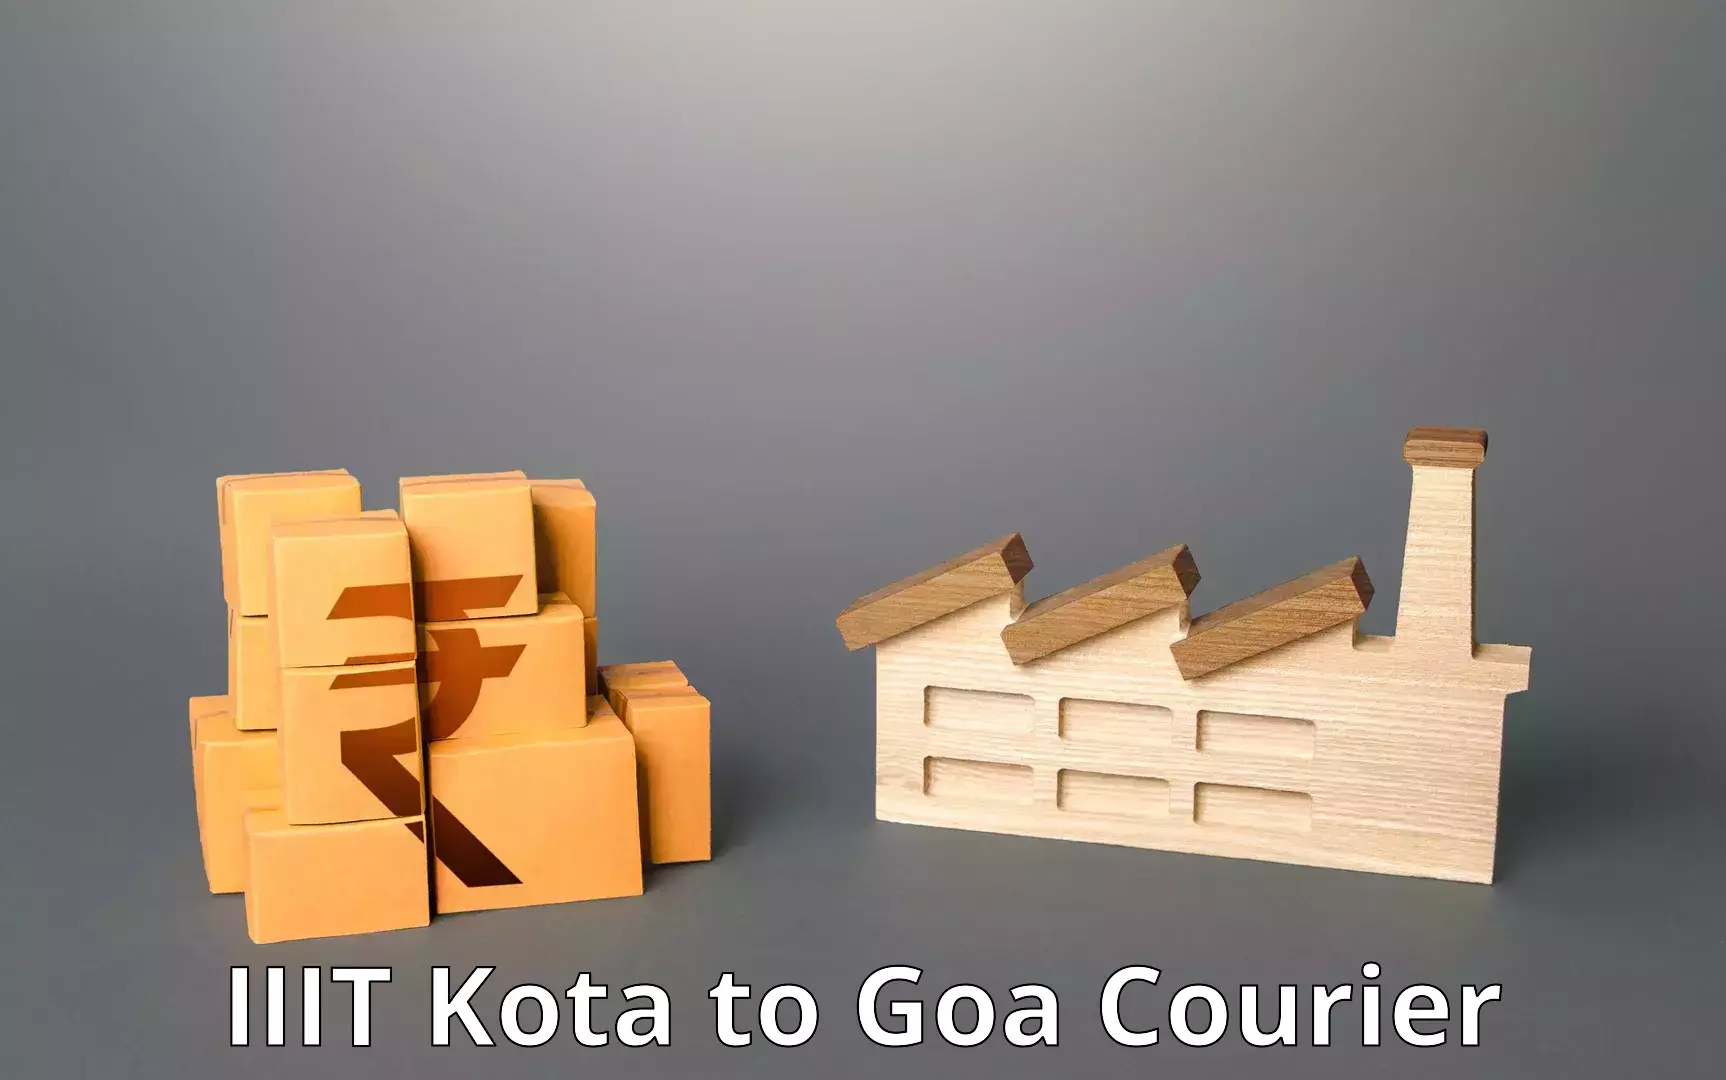 Next-day freight services IIIT Kota to Goa